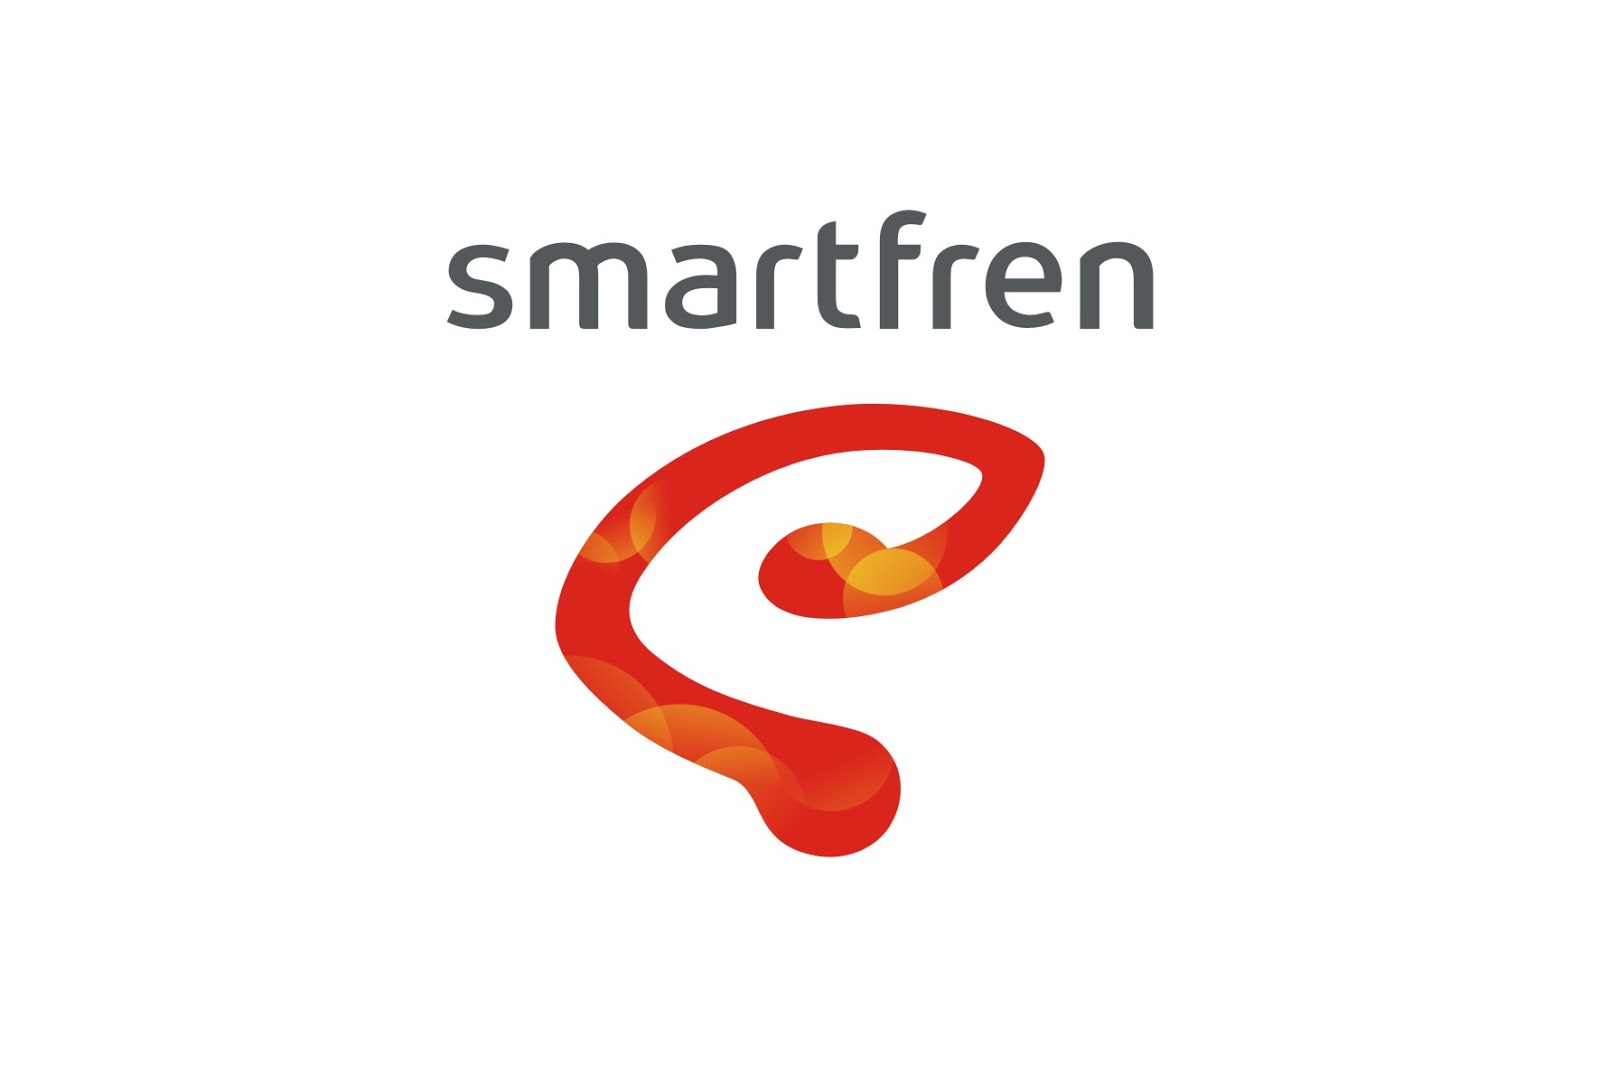 Smartfren Logo Wallpaper